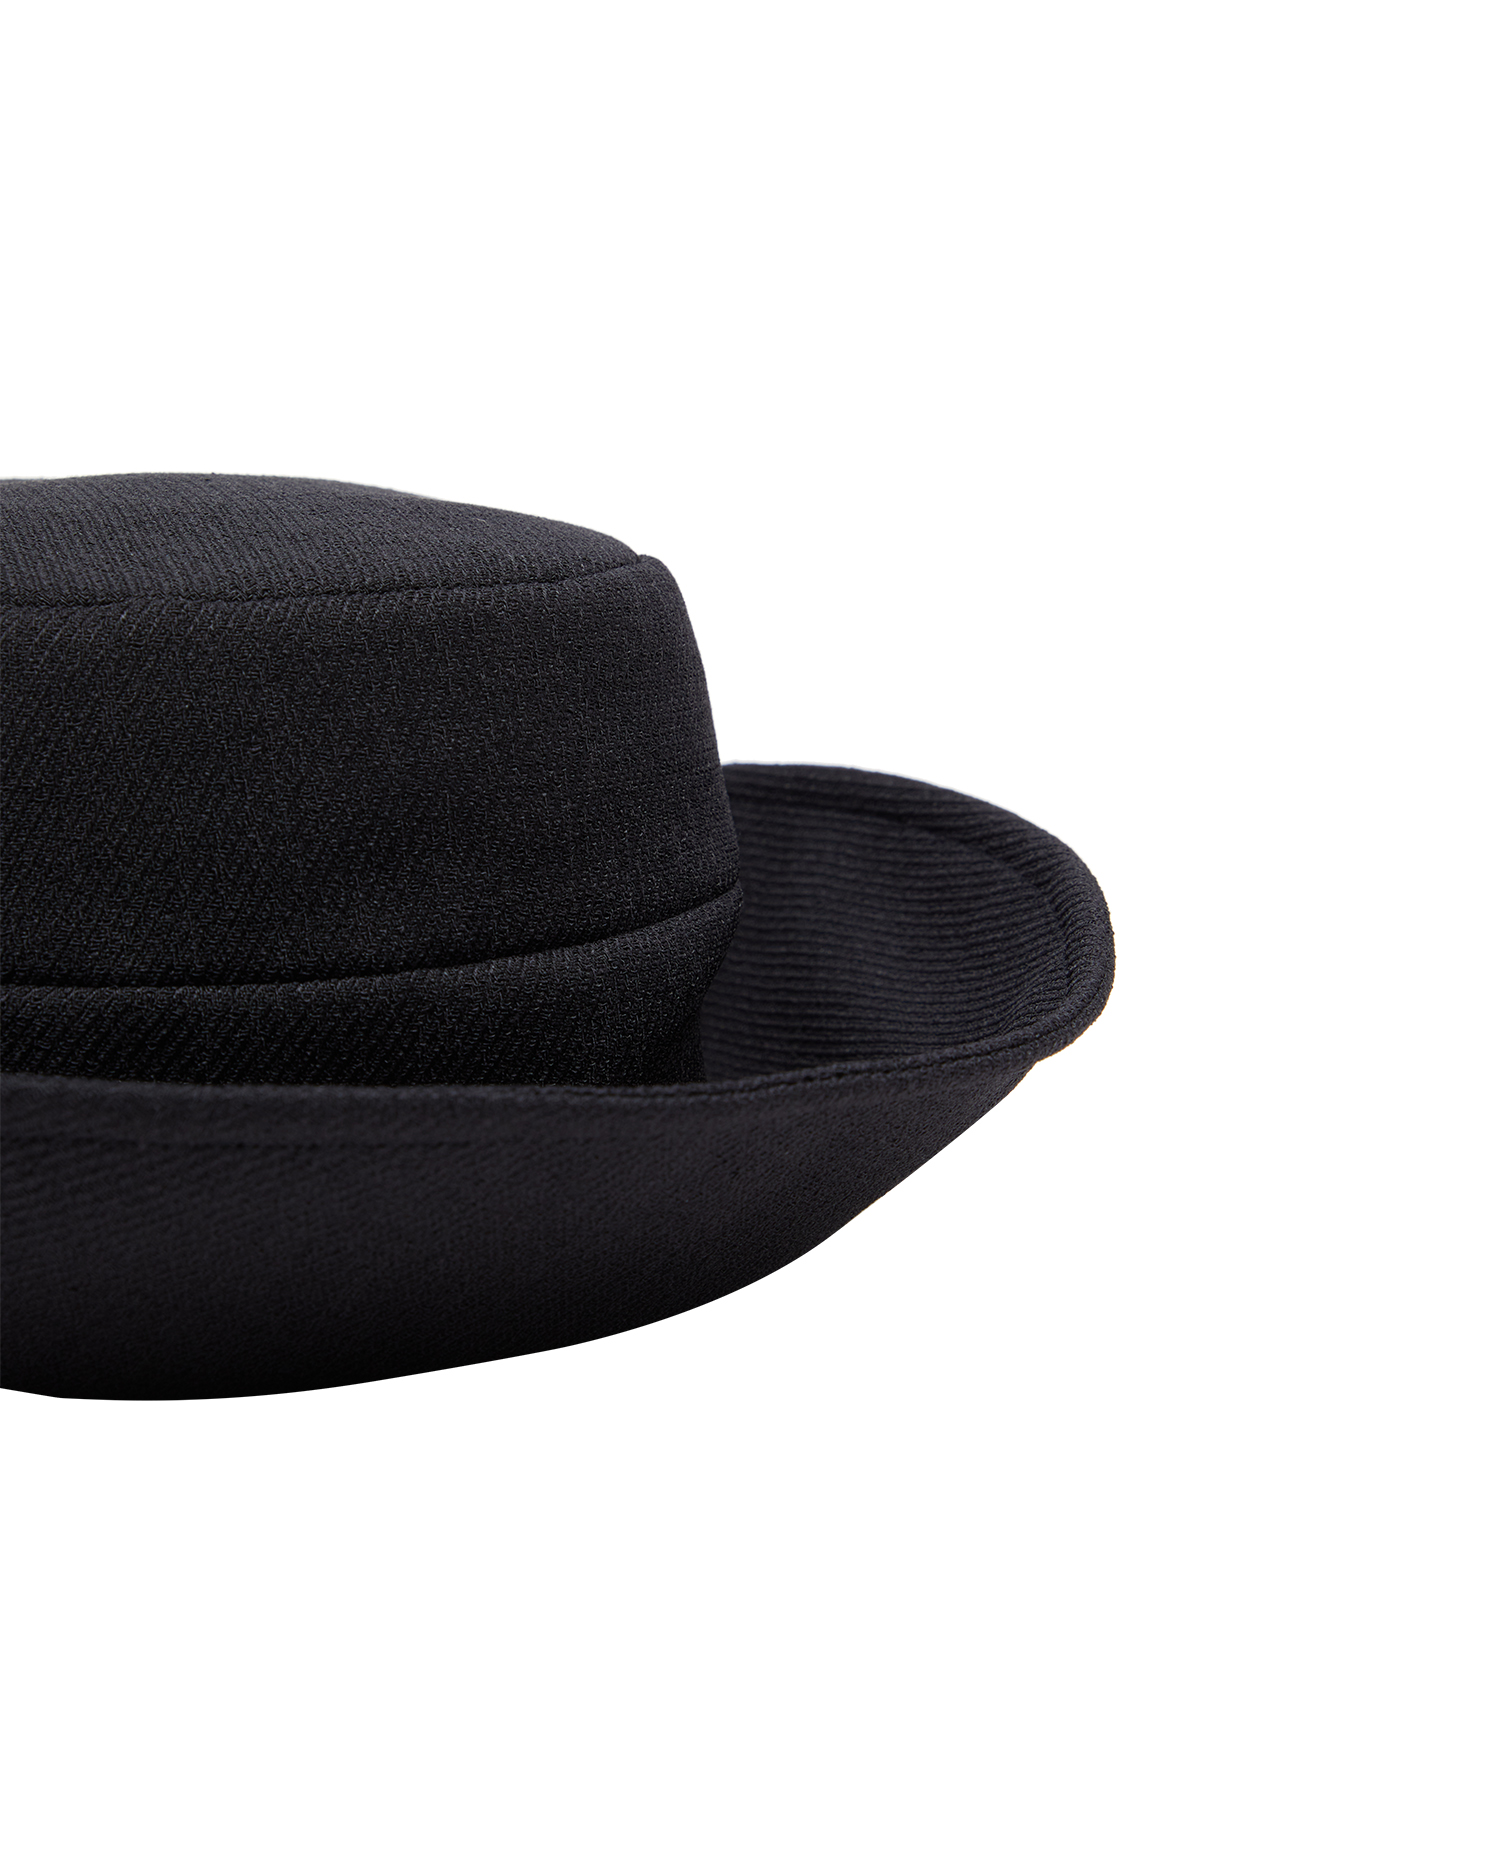 Linen Kersey hat